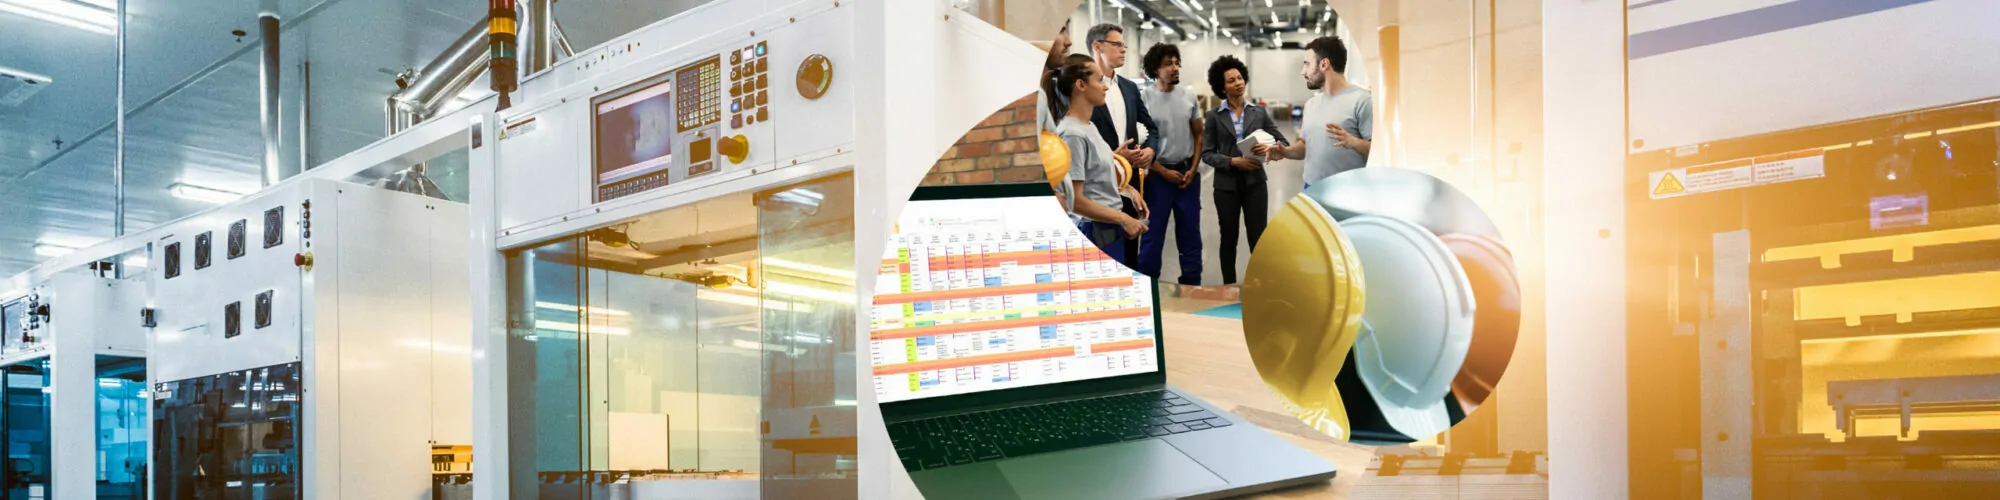 Bild von Personen in einer Produktionsstätte, daneben ein Bild von Bauhelme und dahinter Bilder von einem Laptop und Maschinen, valantic Outlook Planner